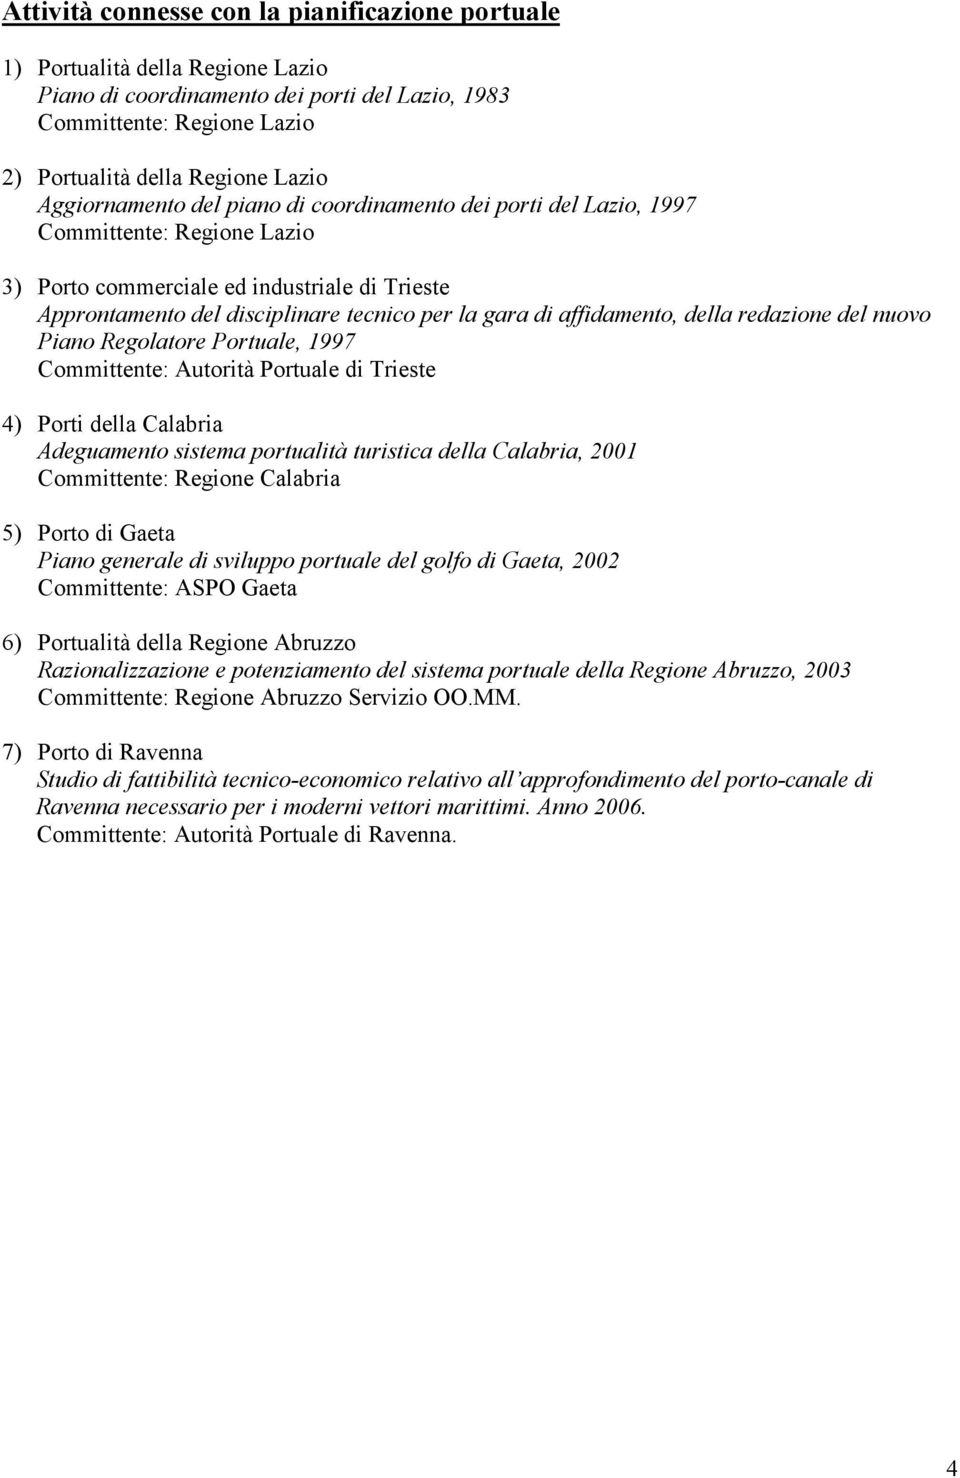 affidamento, della redazione del nuovo Piano Regolatore Portuale, 1997 Committente: Autorità Portuale di Trieste 4) Porti della Calabria Adeguamento sistema portualità turistica della Calabria, 2001